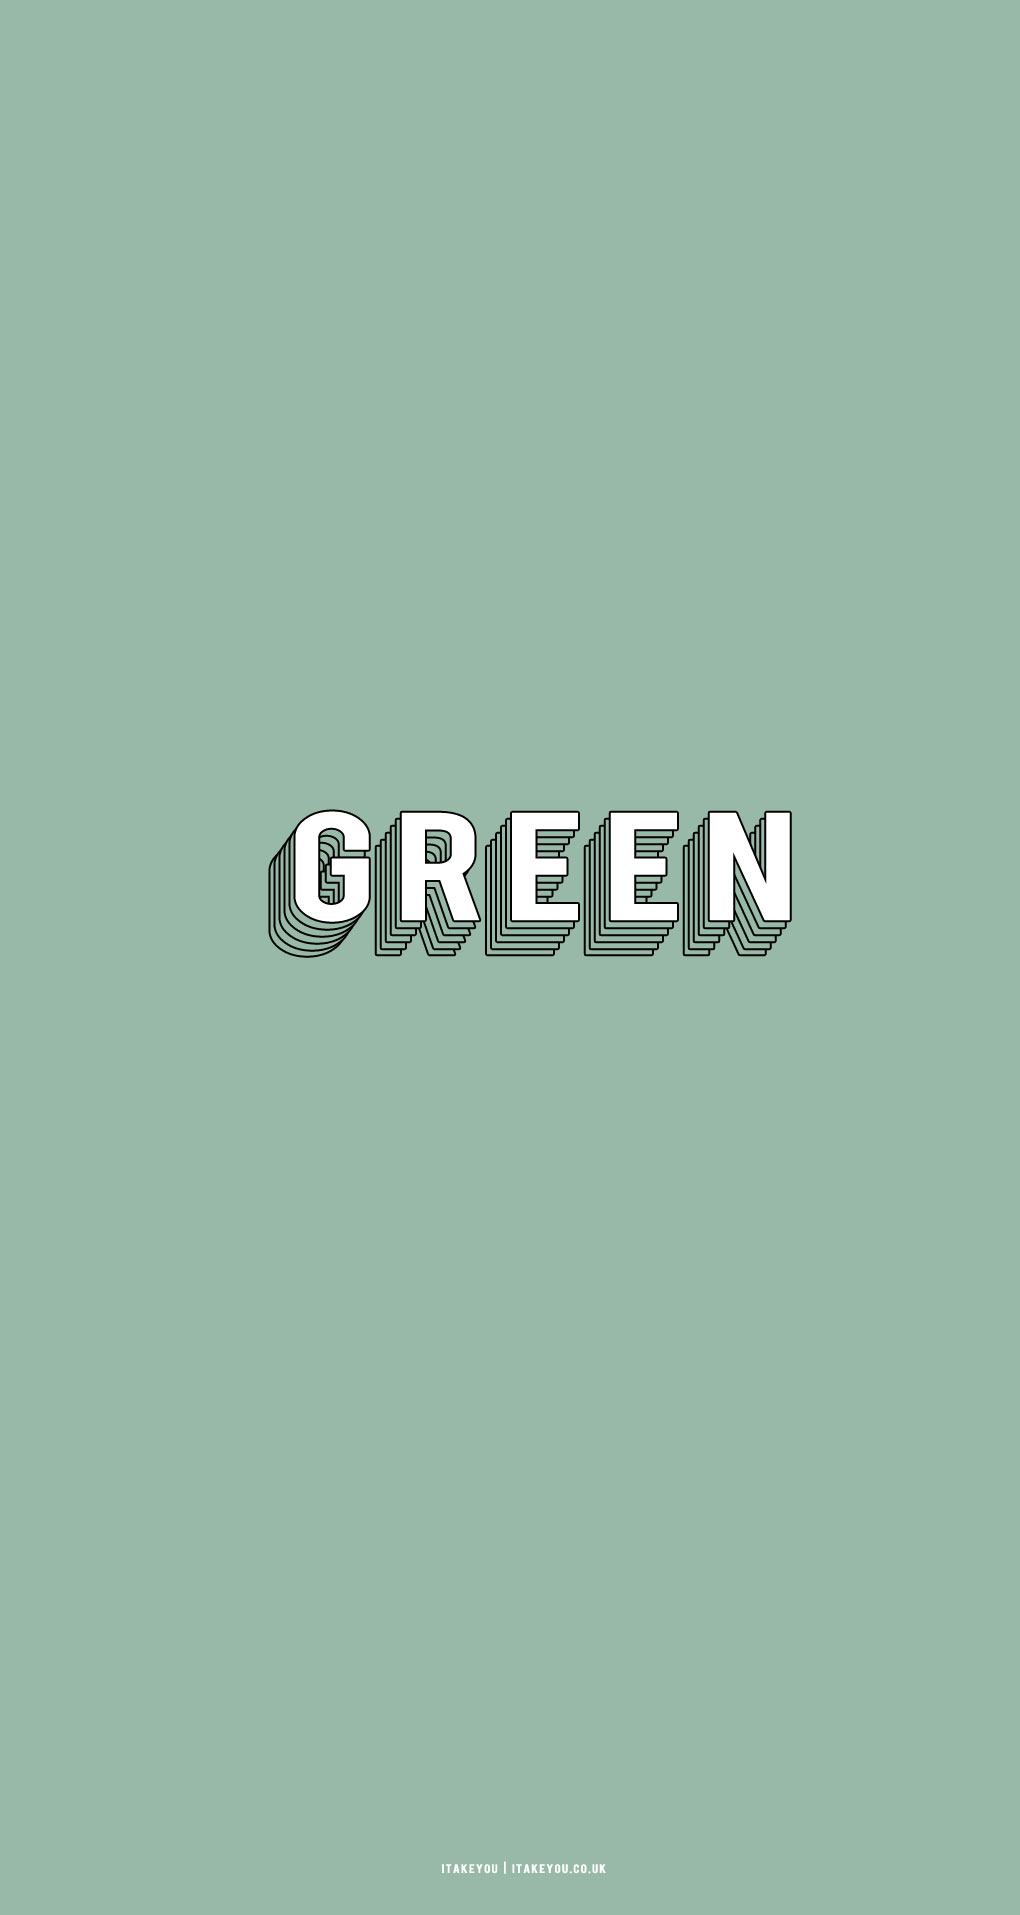 green-green